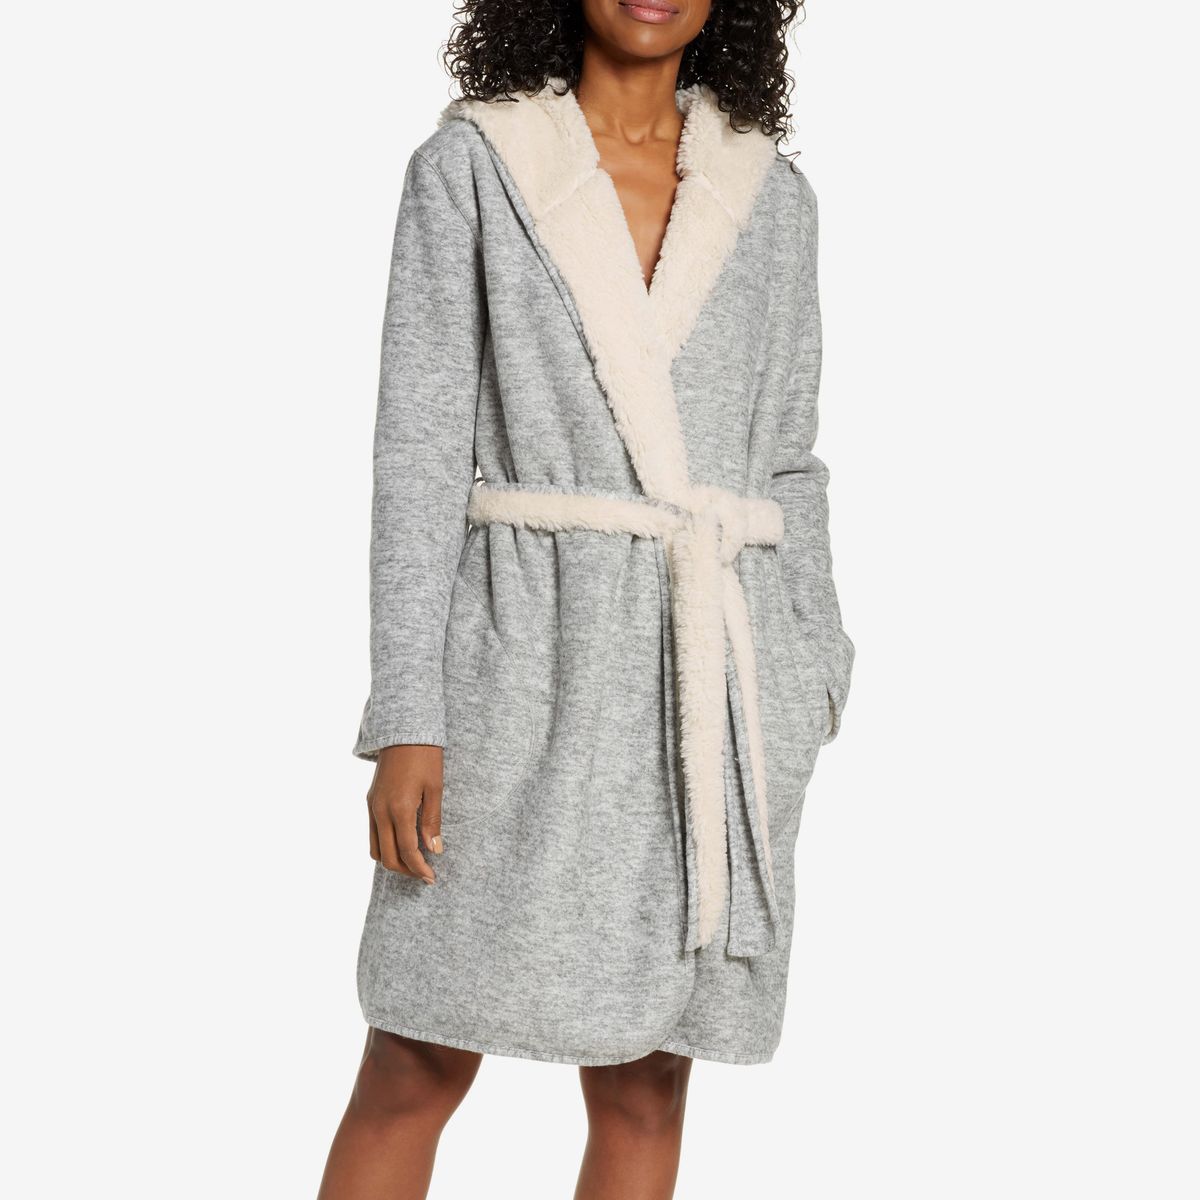 ugg bathrobe canada